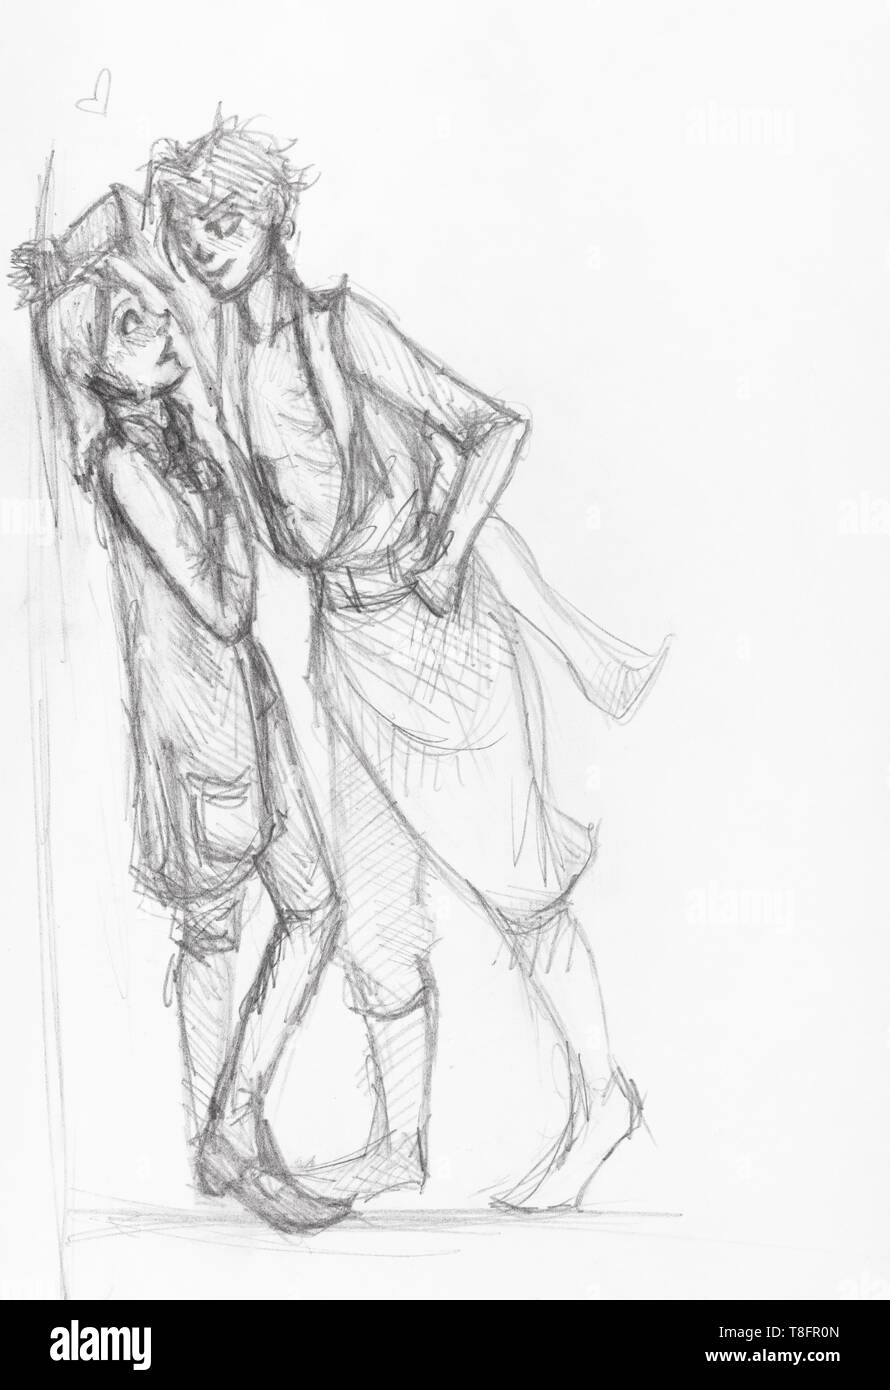 pencil drawings of people hugging